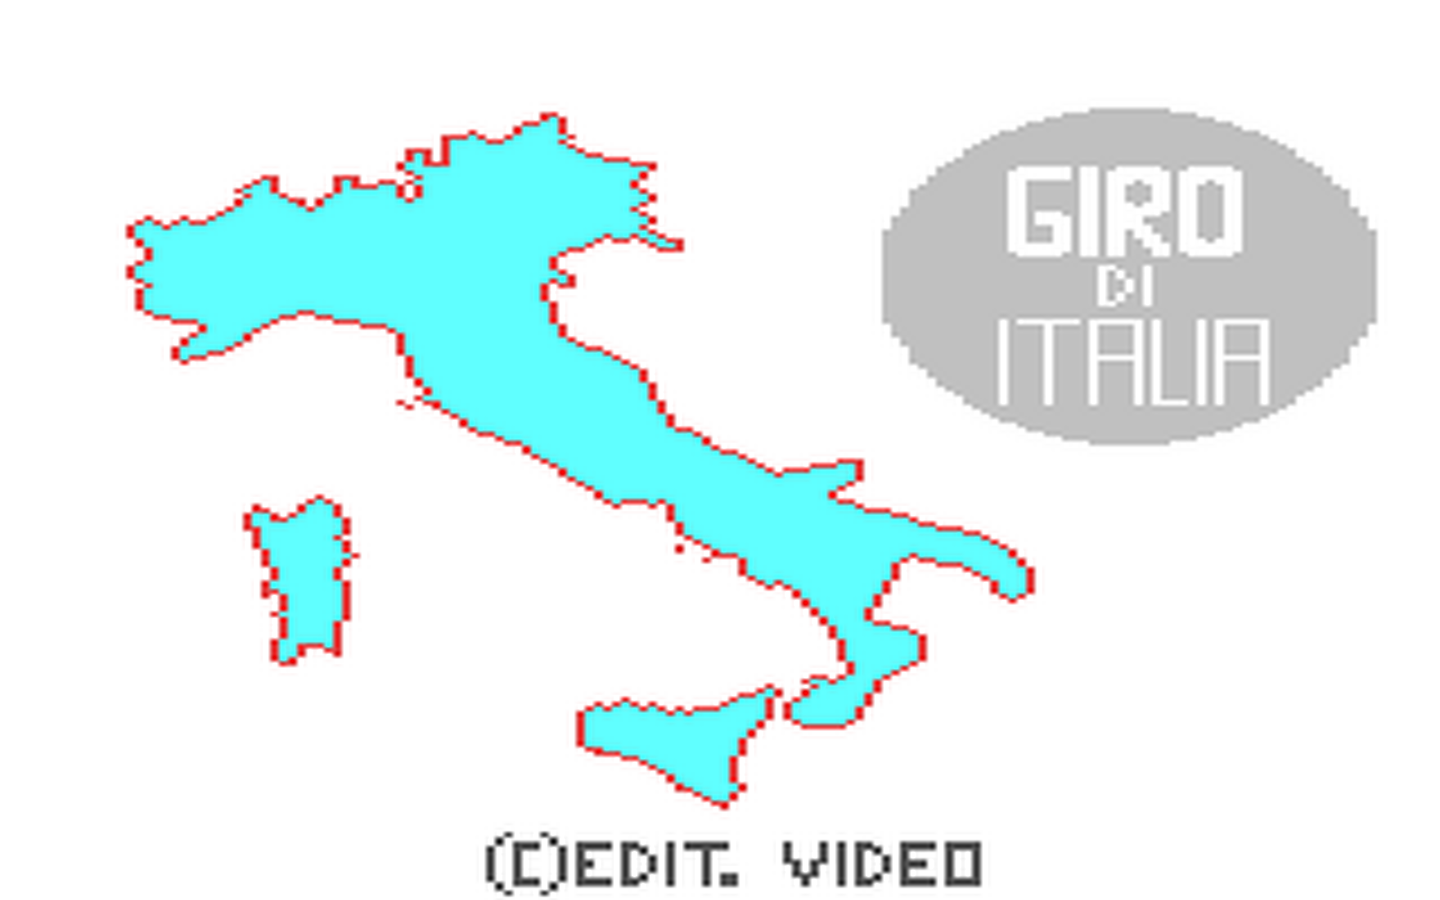 C64 GameBase Giro_di_Italia Edizione_Logica_2000/Videoteca_Computer 1985